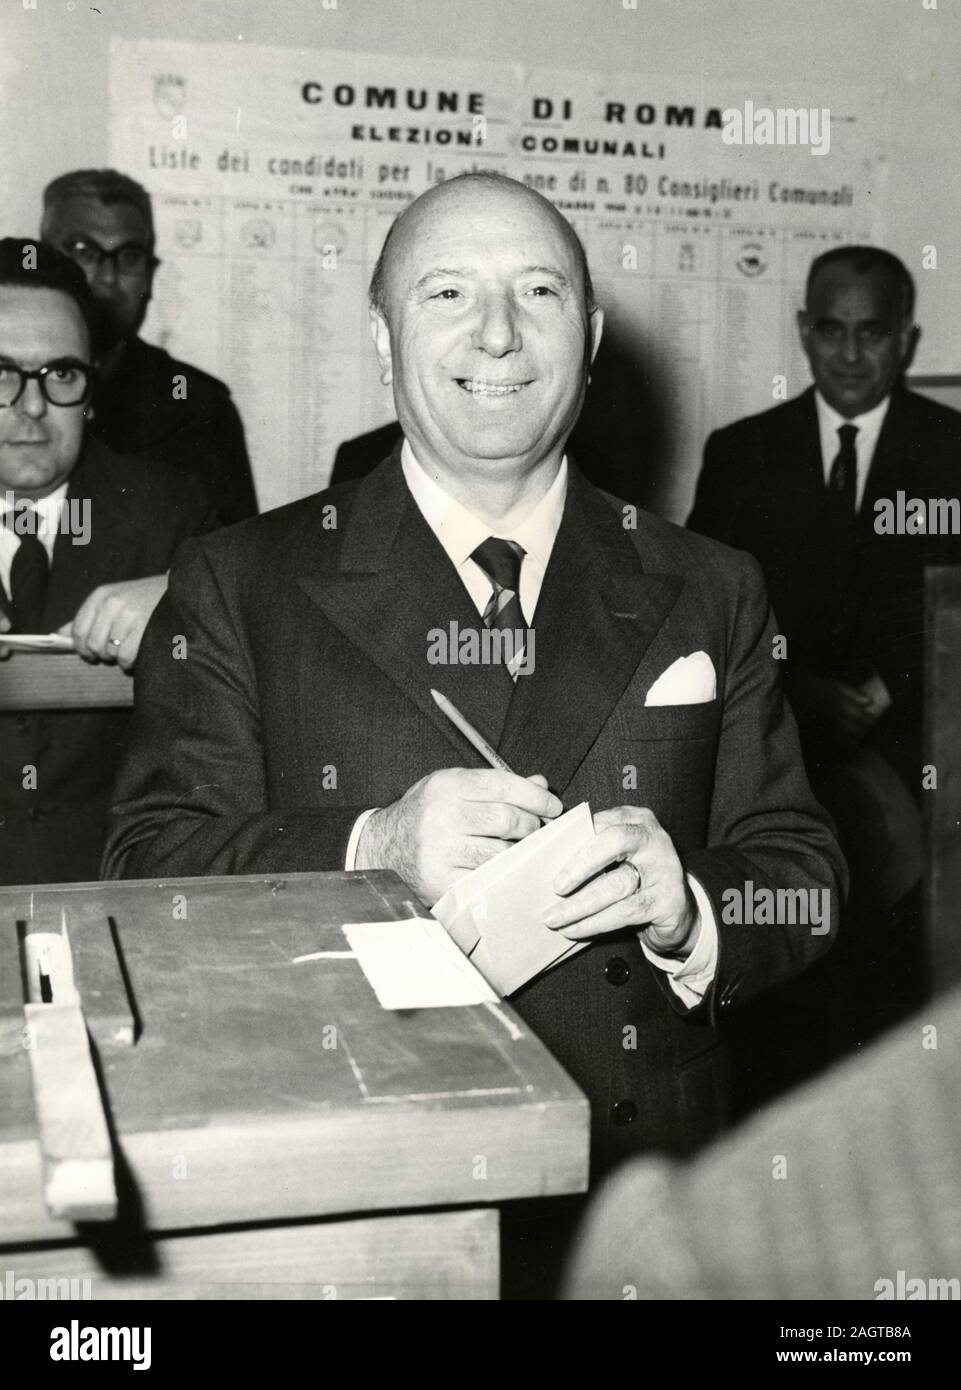 Italian politician Mario Scelba at the polls, Italy 1960s Stock Photo